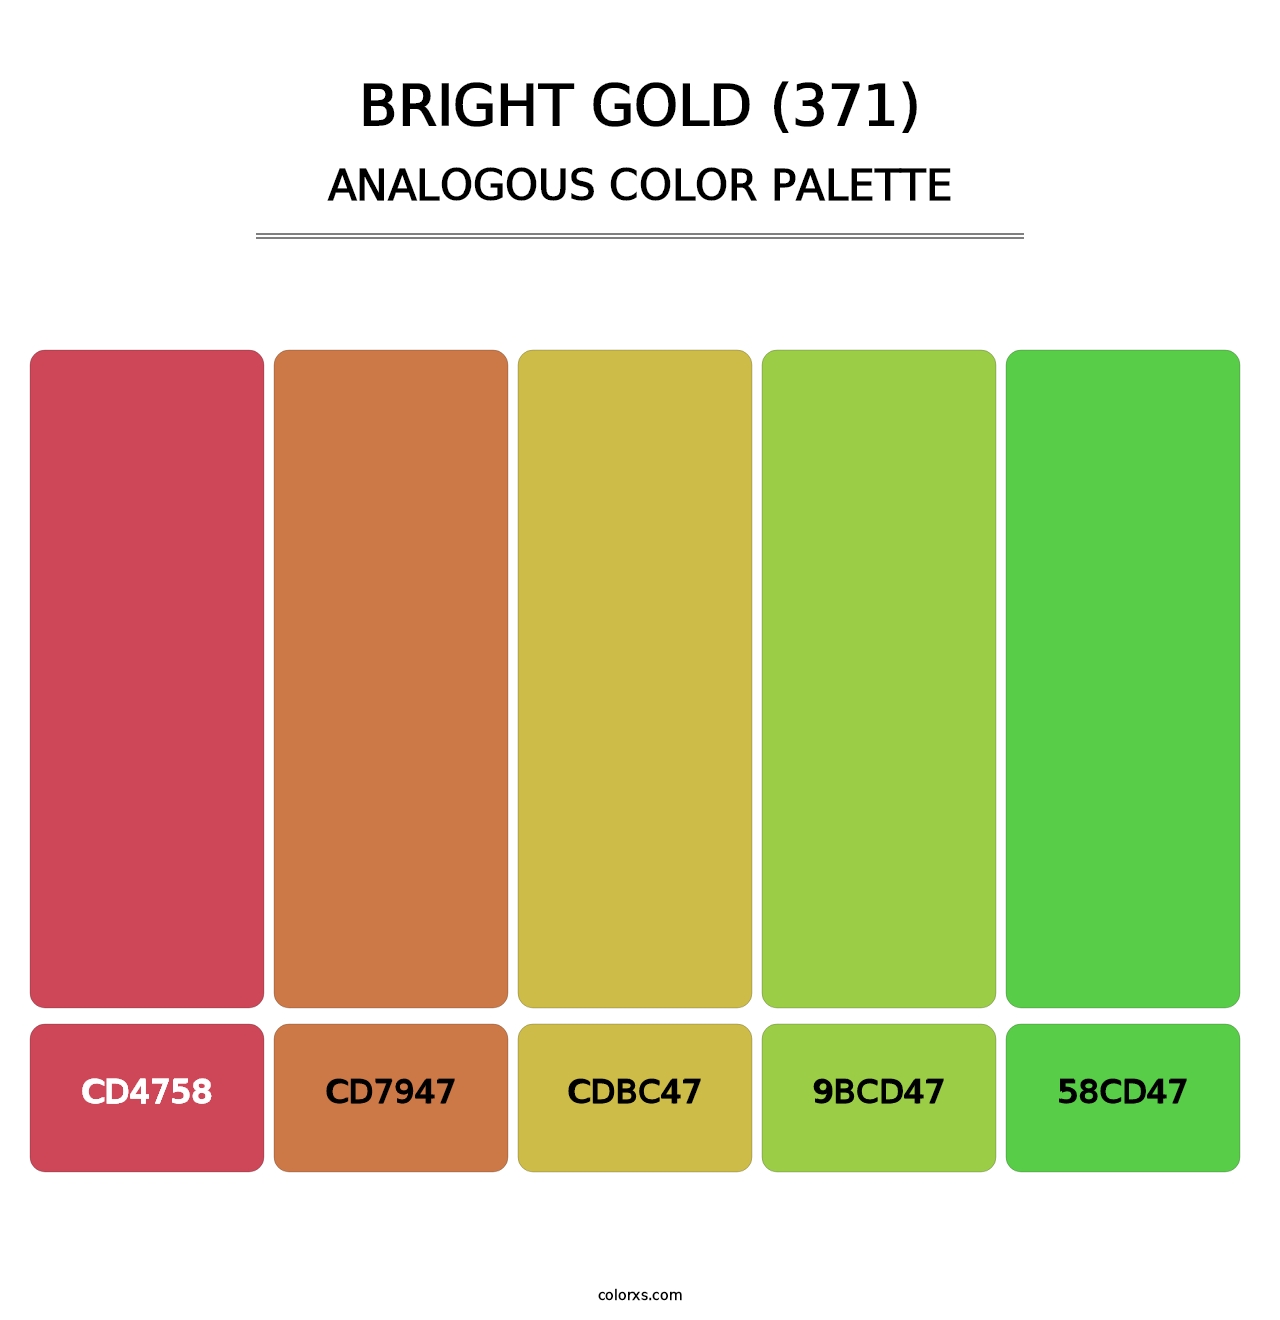 Bright Gold (371) - Analogous Color Palette